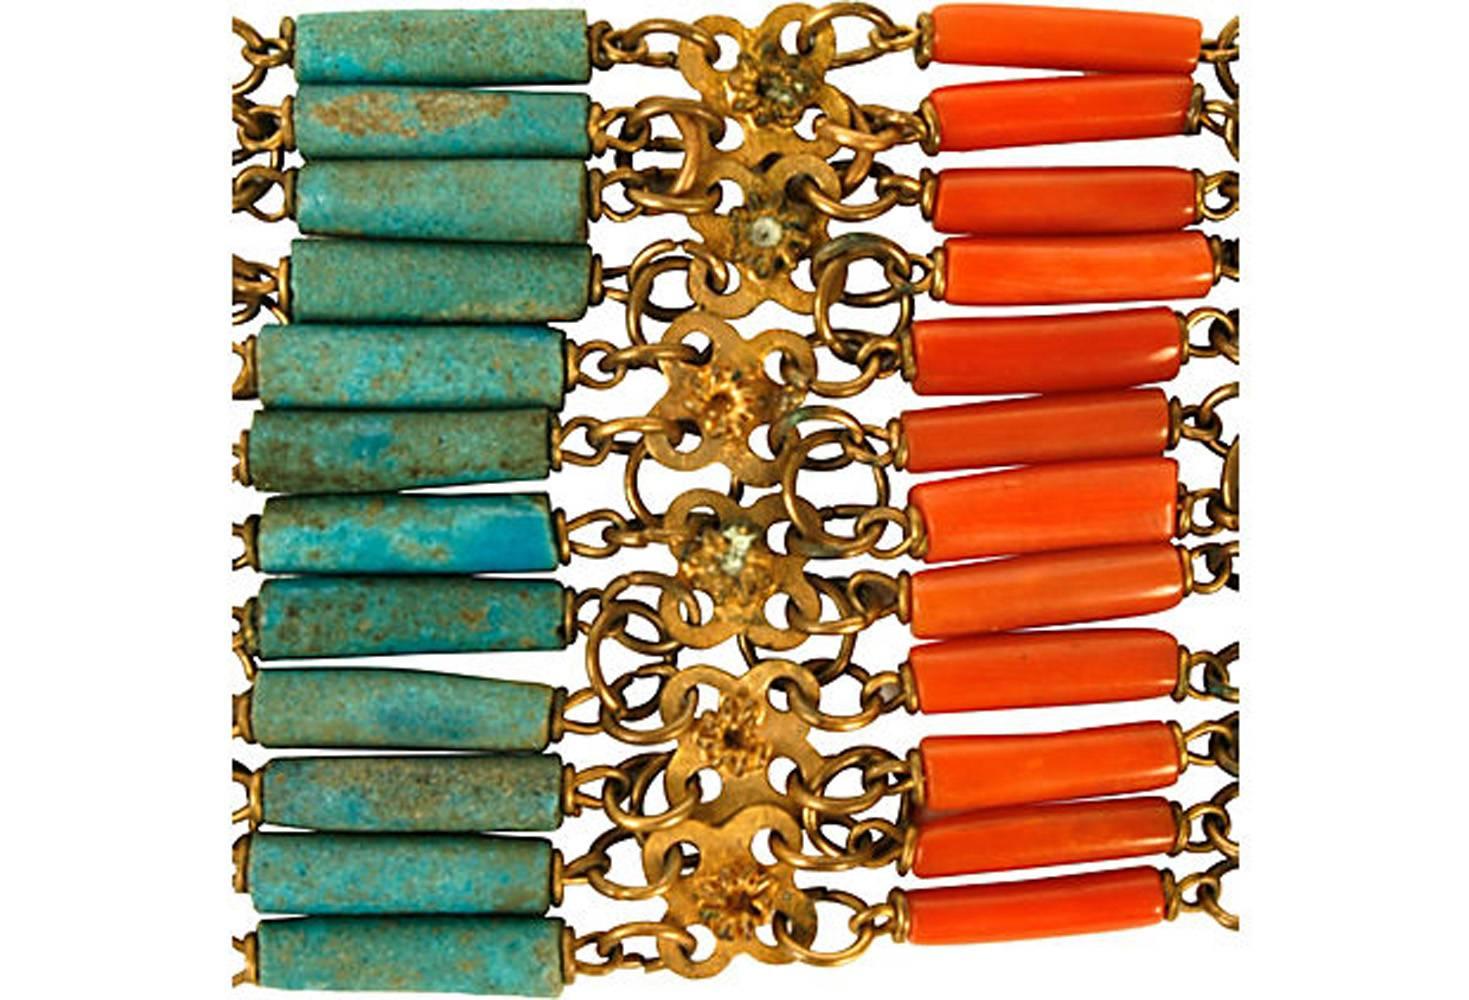 Bracelet chinois en filigrane de turquoise, corail et vermeil avec fermoir en vermeil. Pas de marque de fabricant.
N.P. Trent est un nom respecté dans le domaine des antiquités depuis plus de 30 ans, avec une grande collection de mode et de bijoux